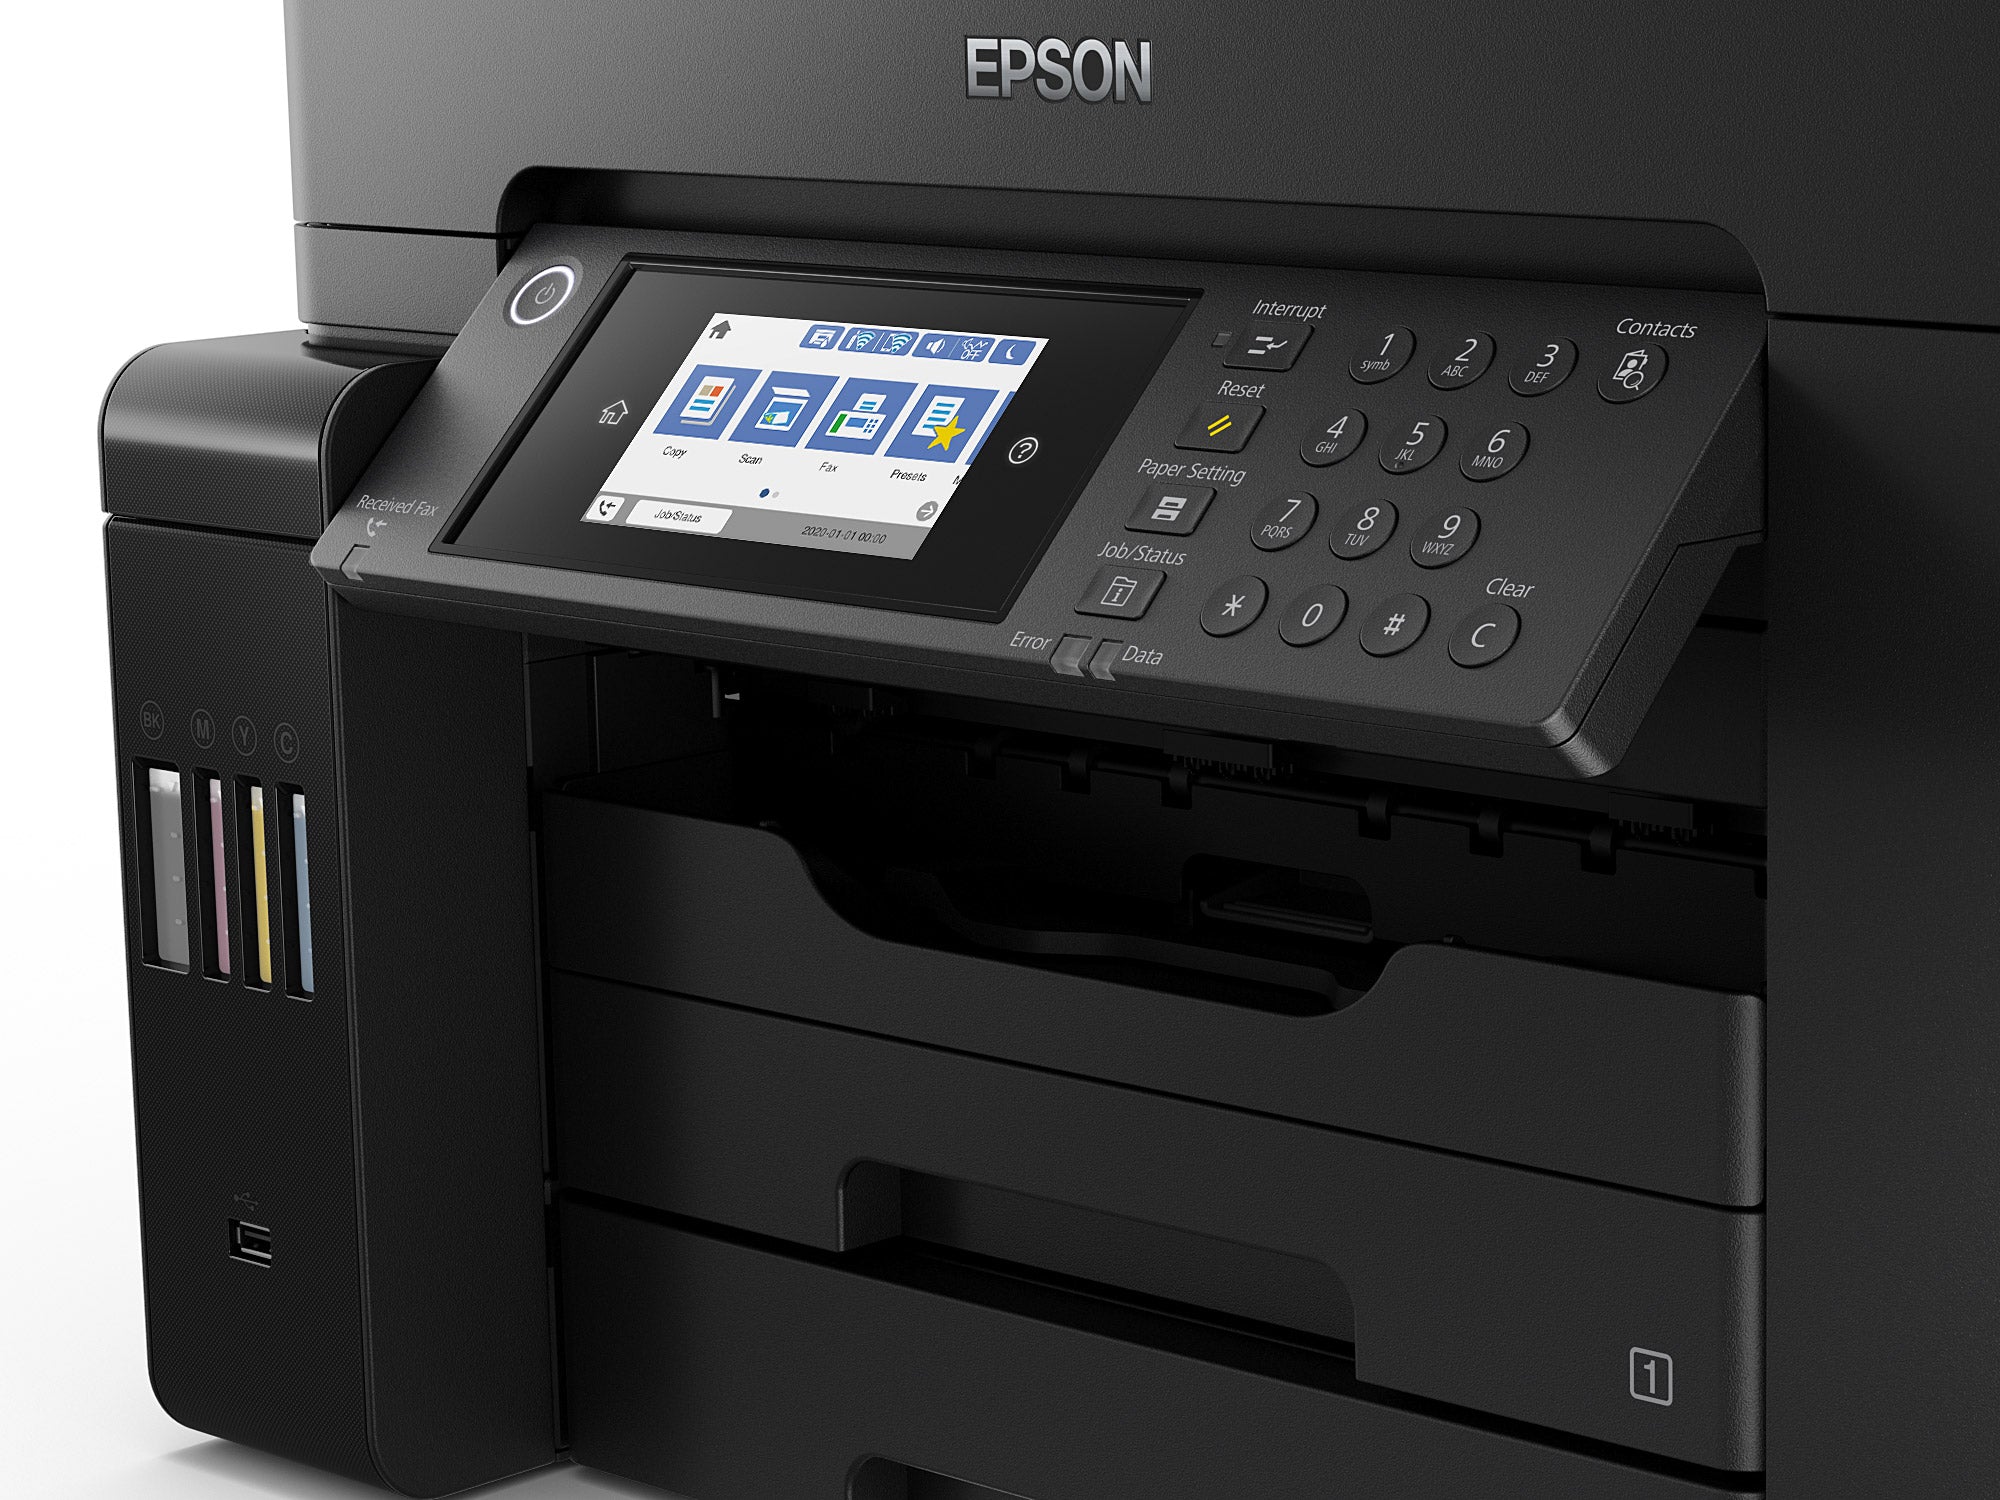 EPSON L15160 (C11CH71404) color printer